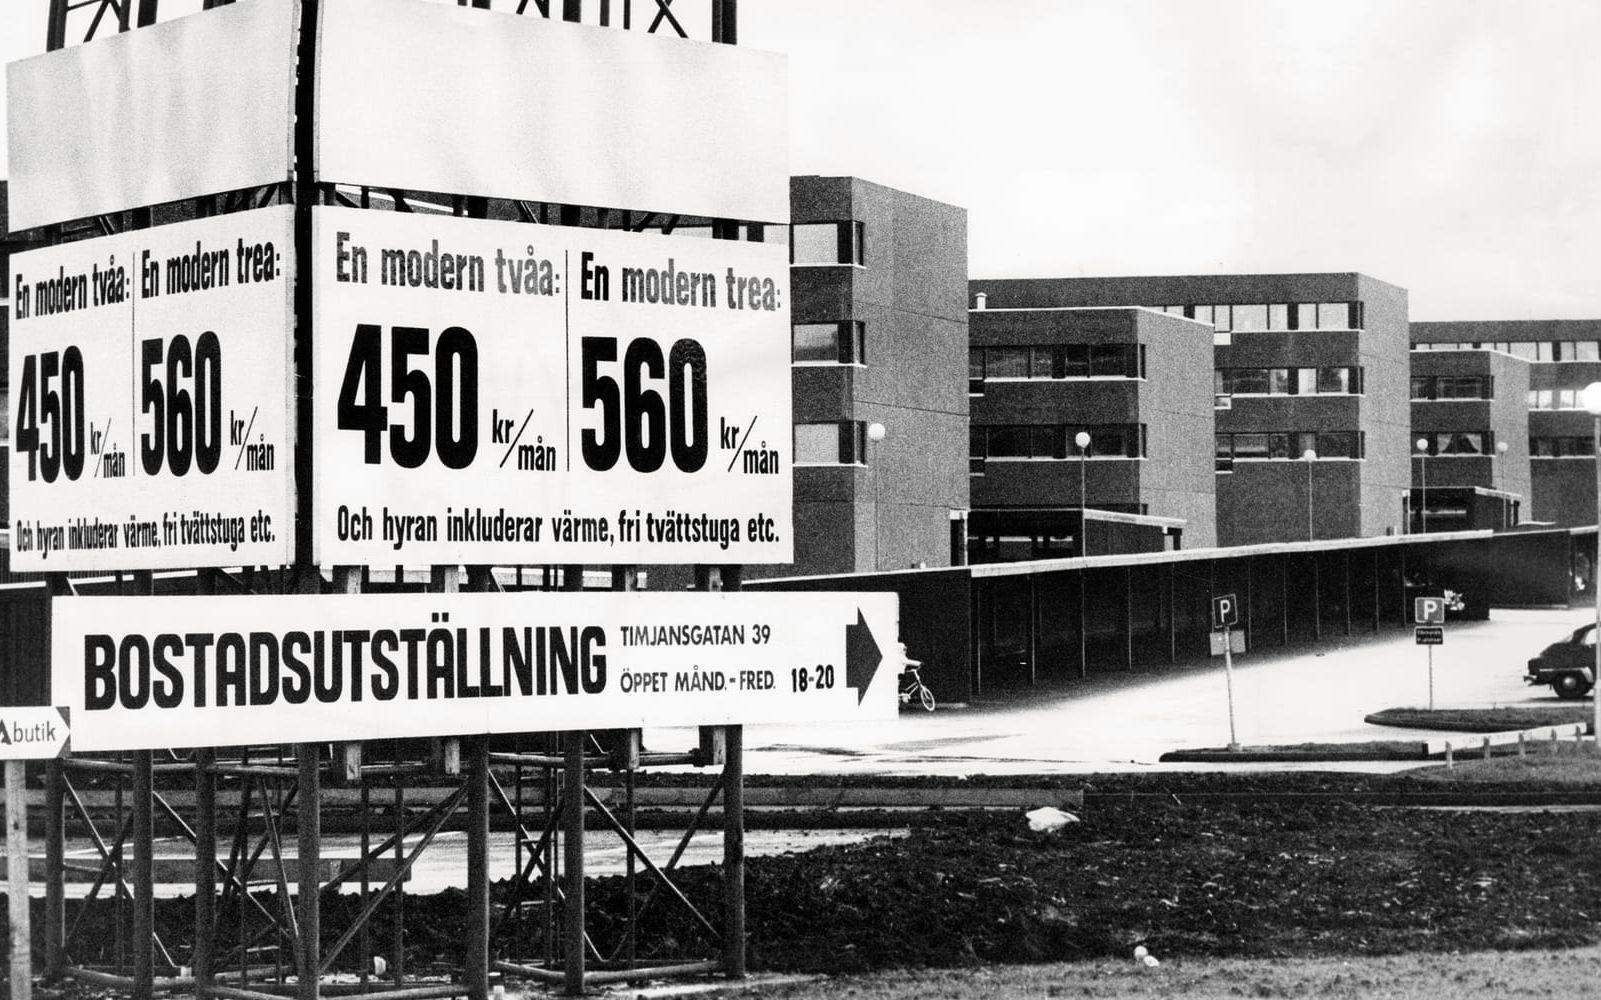 1950- och 60-talen hade varit pionjärtid med tidningsreportage i ljusa kulörer. 1970-talet kom med kärvare tongångar. Bilden från Timjansgatan i Angered ledsagade en varnande text den 8 november 1971 i Expressen: <em id="emphasis-4c3b764ab0582c9f939ca8a1157fd30f">De bergstäder , som Göteborg bygger i Angered-Bergum, har blivit ett dyrt misstag. De många outhyrda lägenheterna som är koncentrerade till dessa nya stadsdelar, bör också vara en varning för andra städer.Angered-Bergum är ett lärorikt exempel på hur det går om teknokraterna får styra och placera fel hur på fel plats. Det är läget och miljön bostadskonsumenterna säger nej till. </em> 